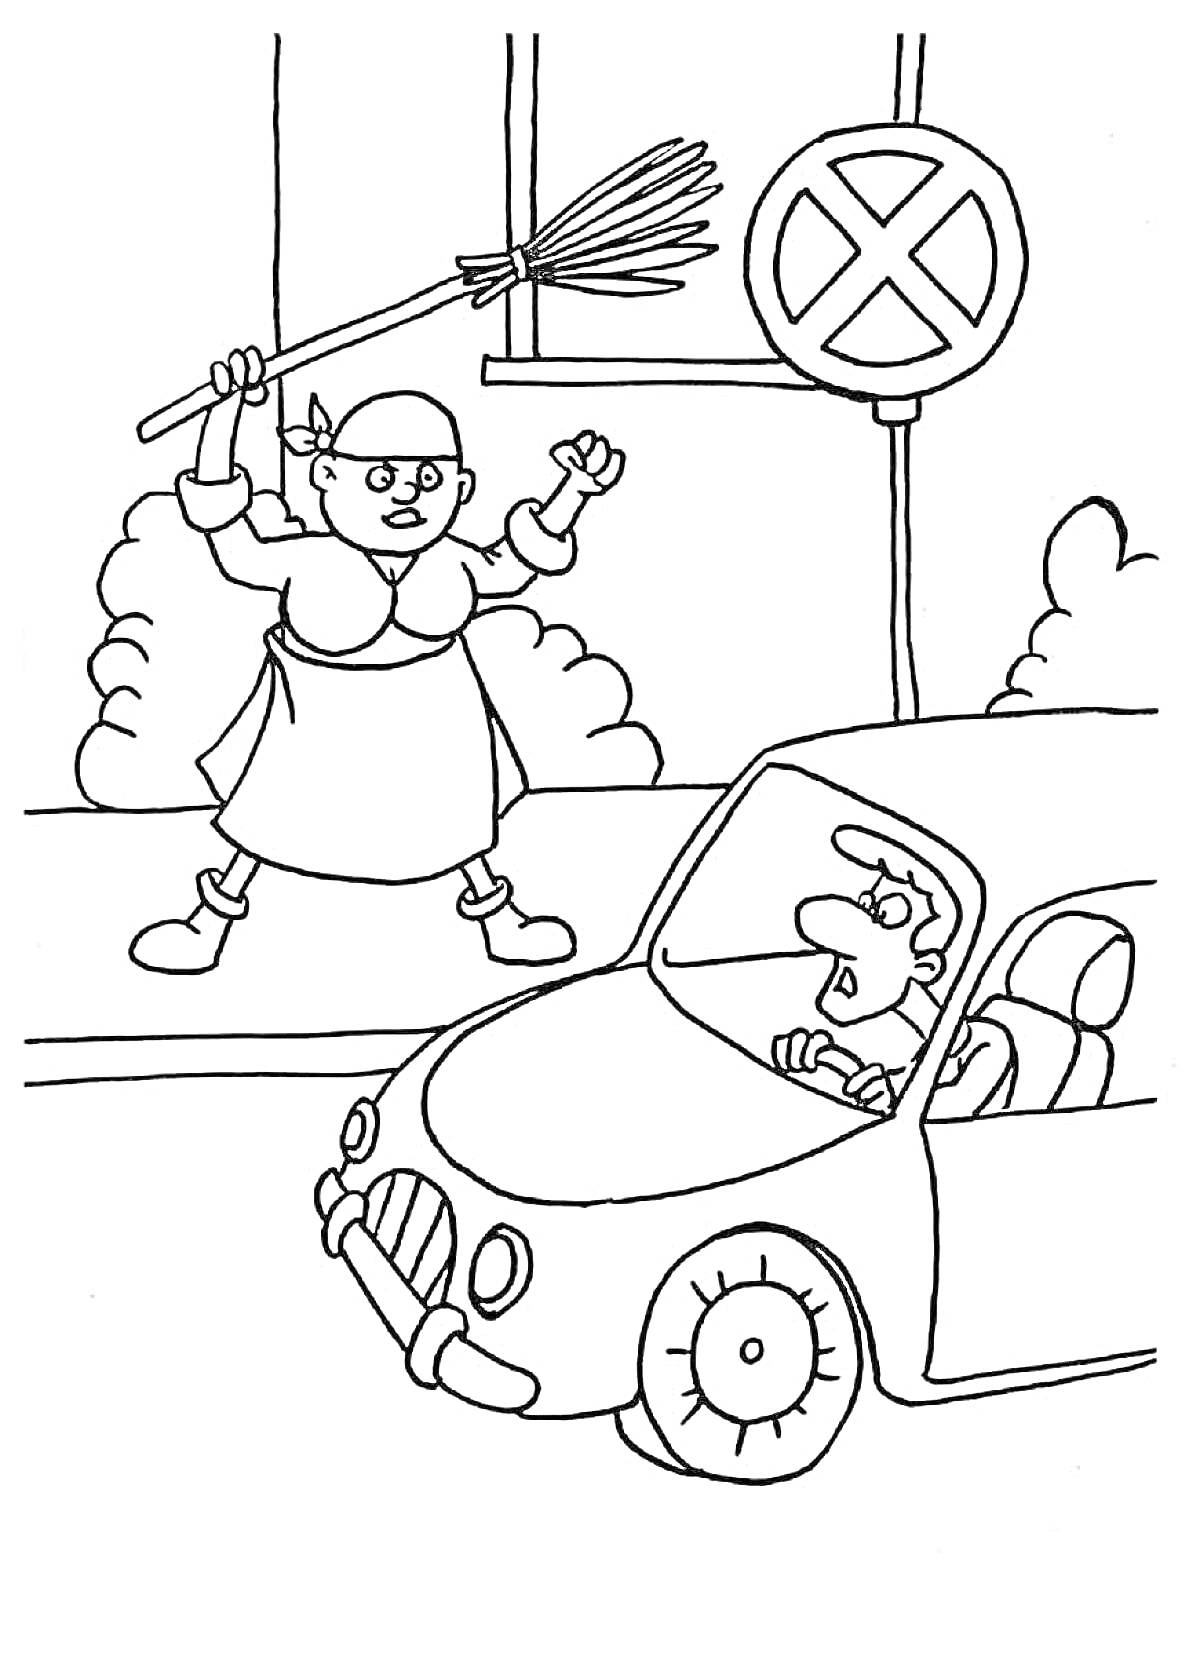 Раскраска Пожилая женщина с веником ругается на водителя возле знака 